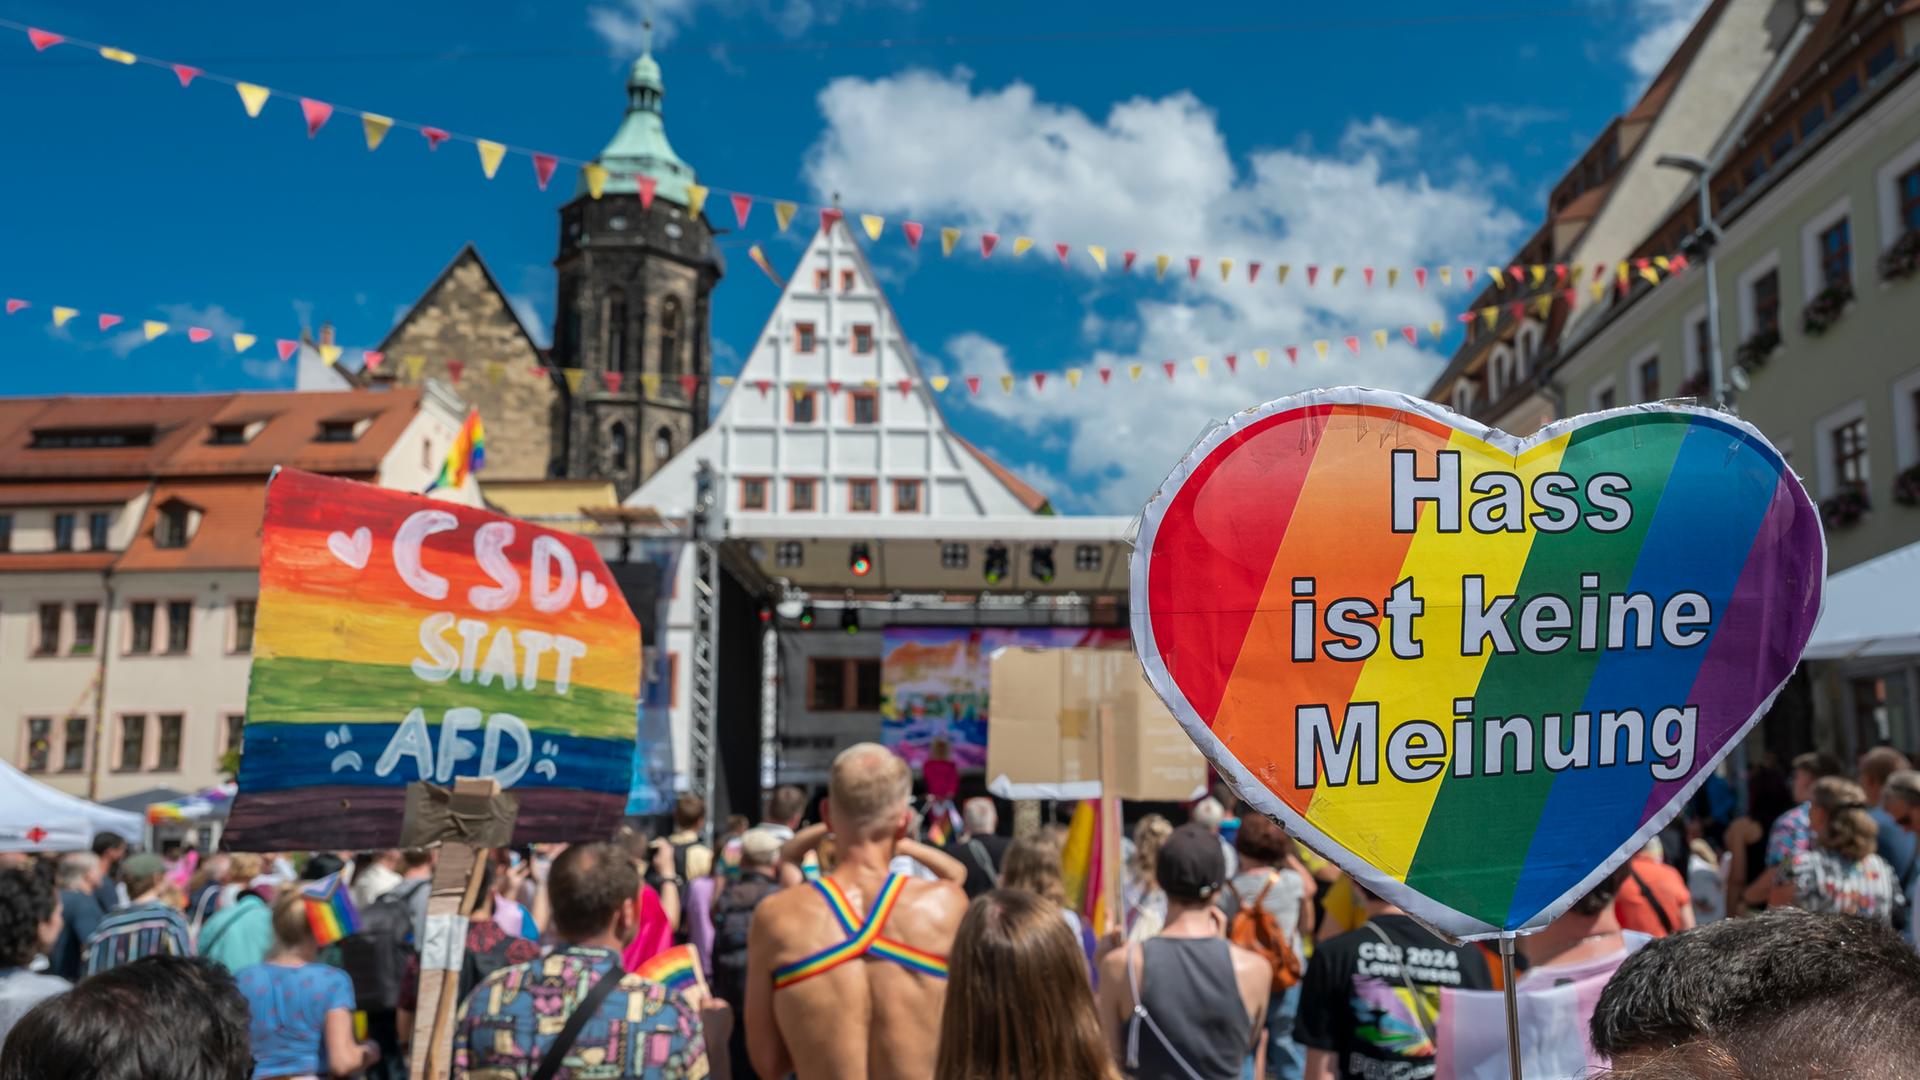 Zahlreiche Teilnehmer versammeln sich während des Christopher Street Day in Pirna auf dem Markt. Im Hintergrund die Stadtkulisse, davor Menschen mit allerlei Regenbogenfarben. Und Transparenten die sagen "CSD statt AFD" und "Hass ist keine Meinung".